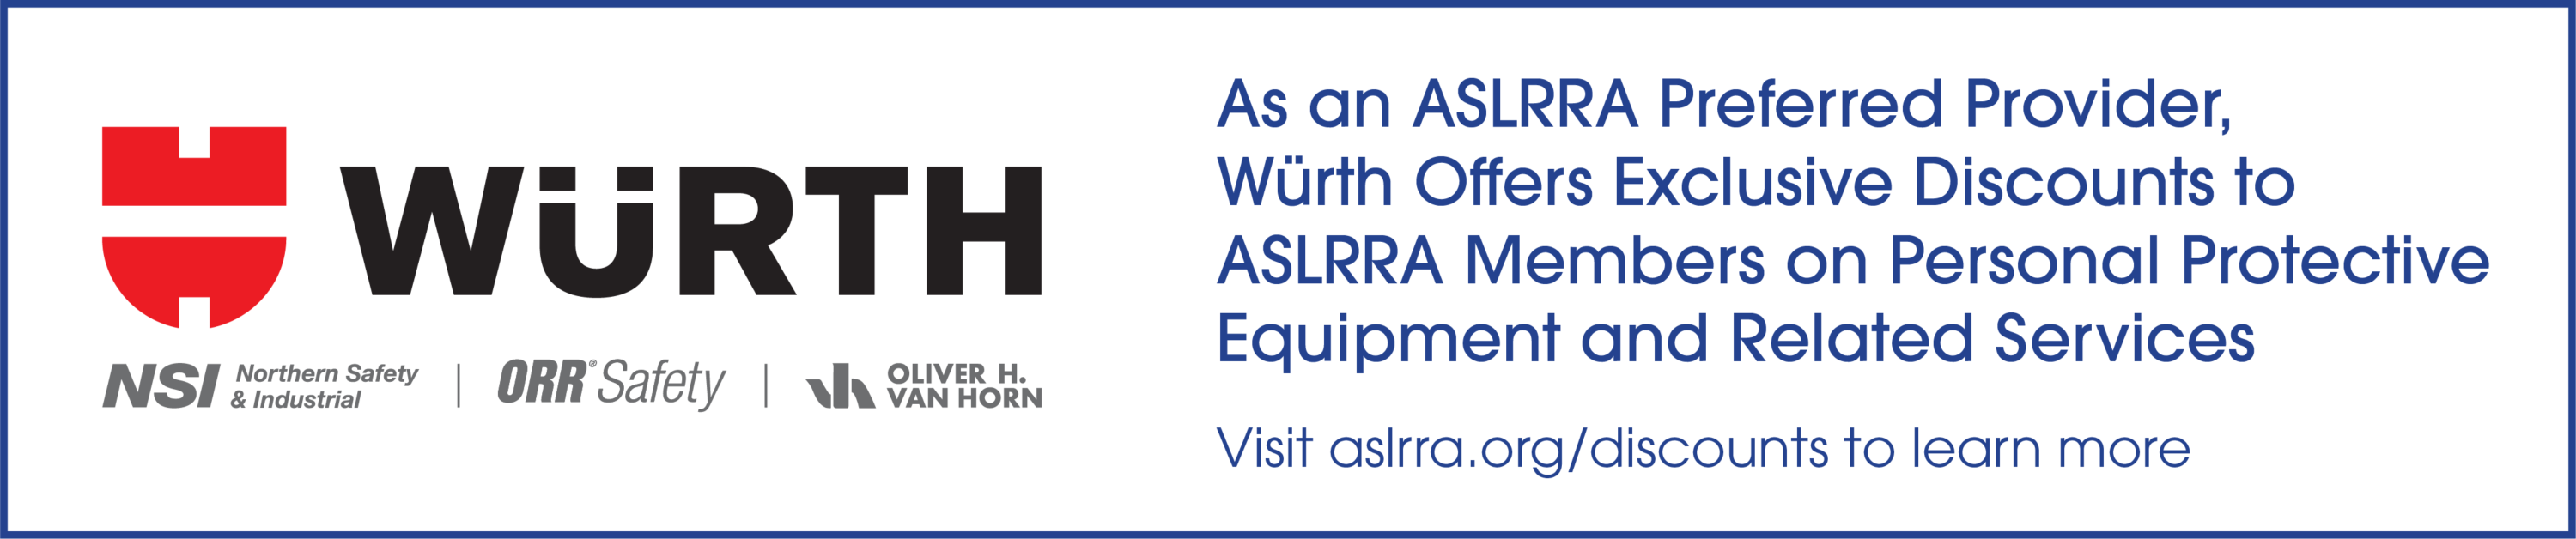 ASLRRA Wurth Preferred Provider